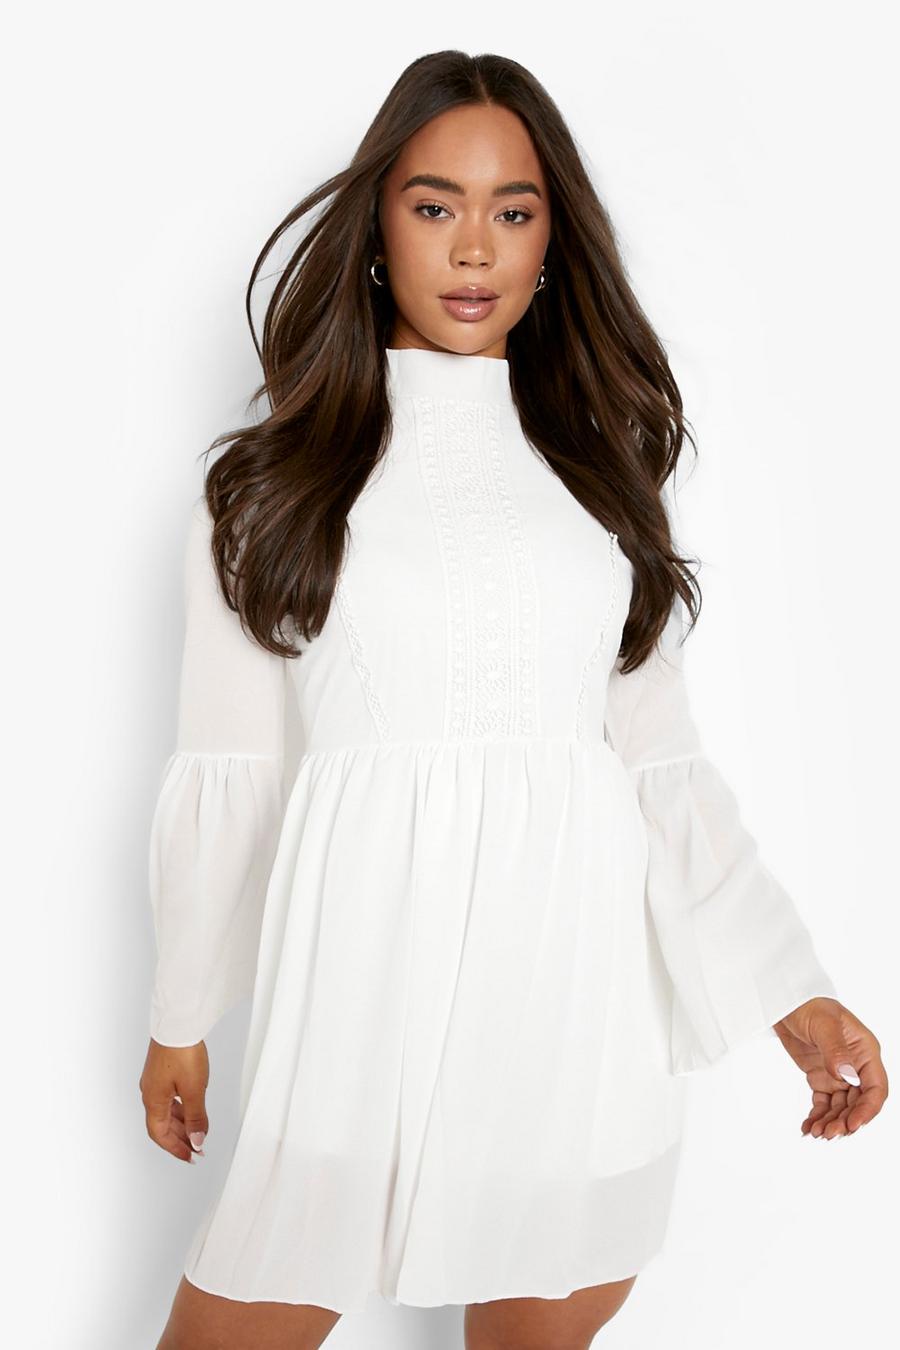 לבן blanco שמלת סמוק קרושה בסגנון בוהמי עם שרוול רחב